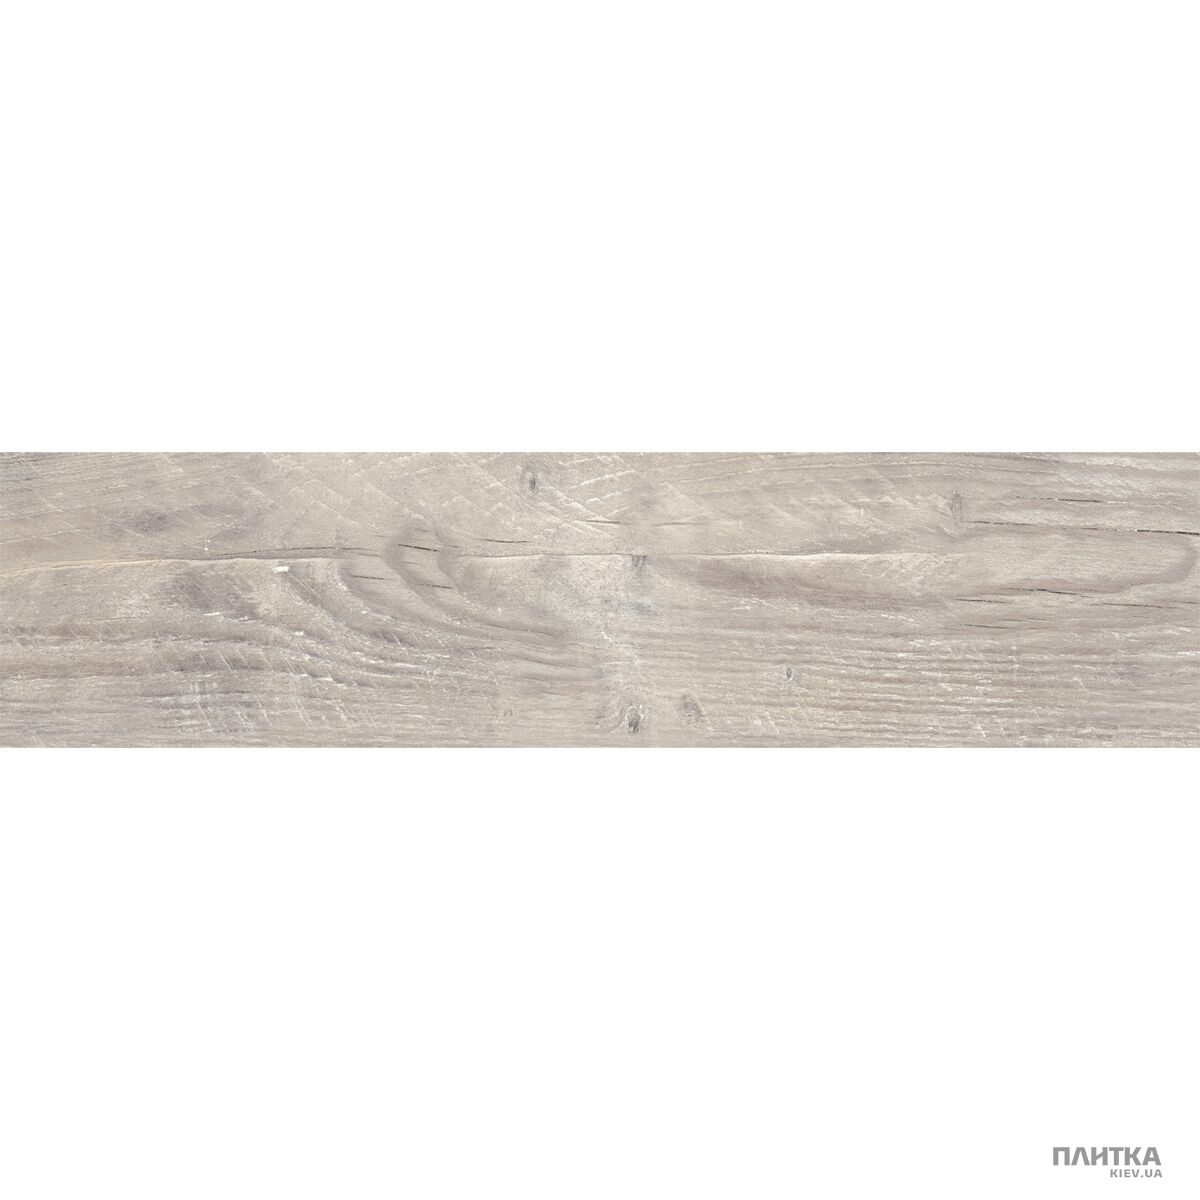 Керамогранит Golden Tile Timber TIMBER Пепельный 37И570 серый